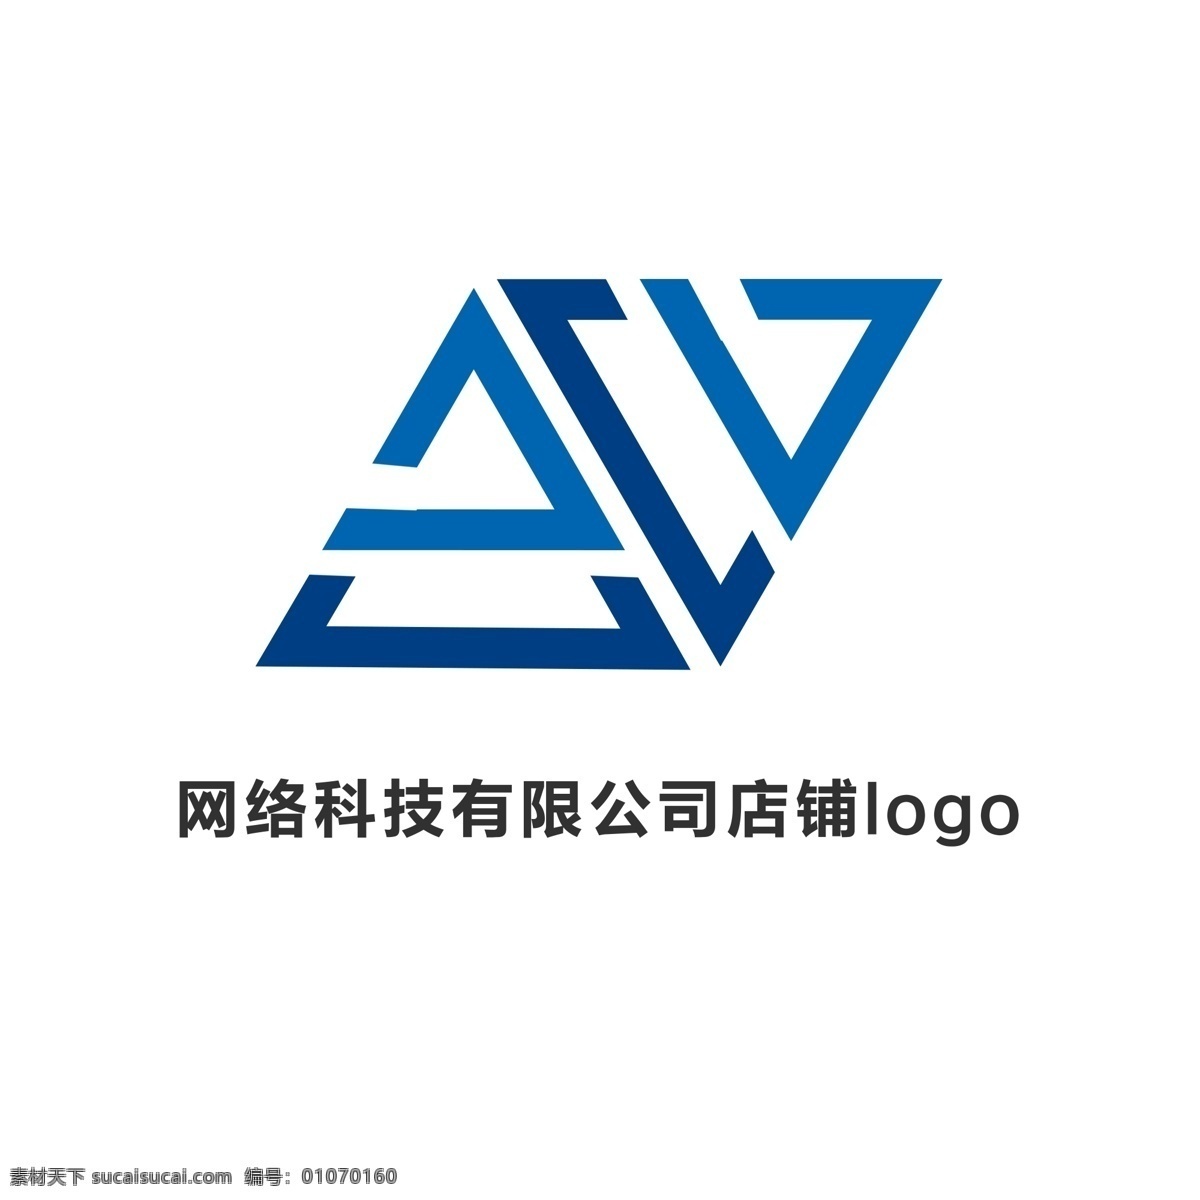 科技 有限公司 简约 logo 公司 几何体 大气